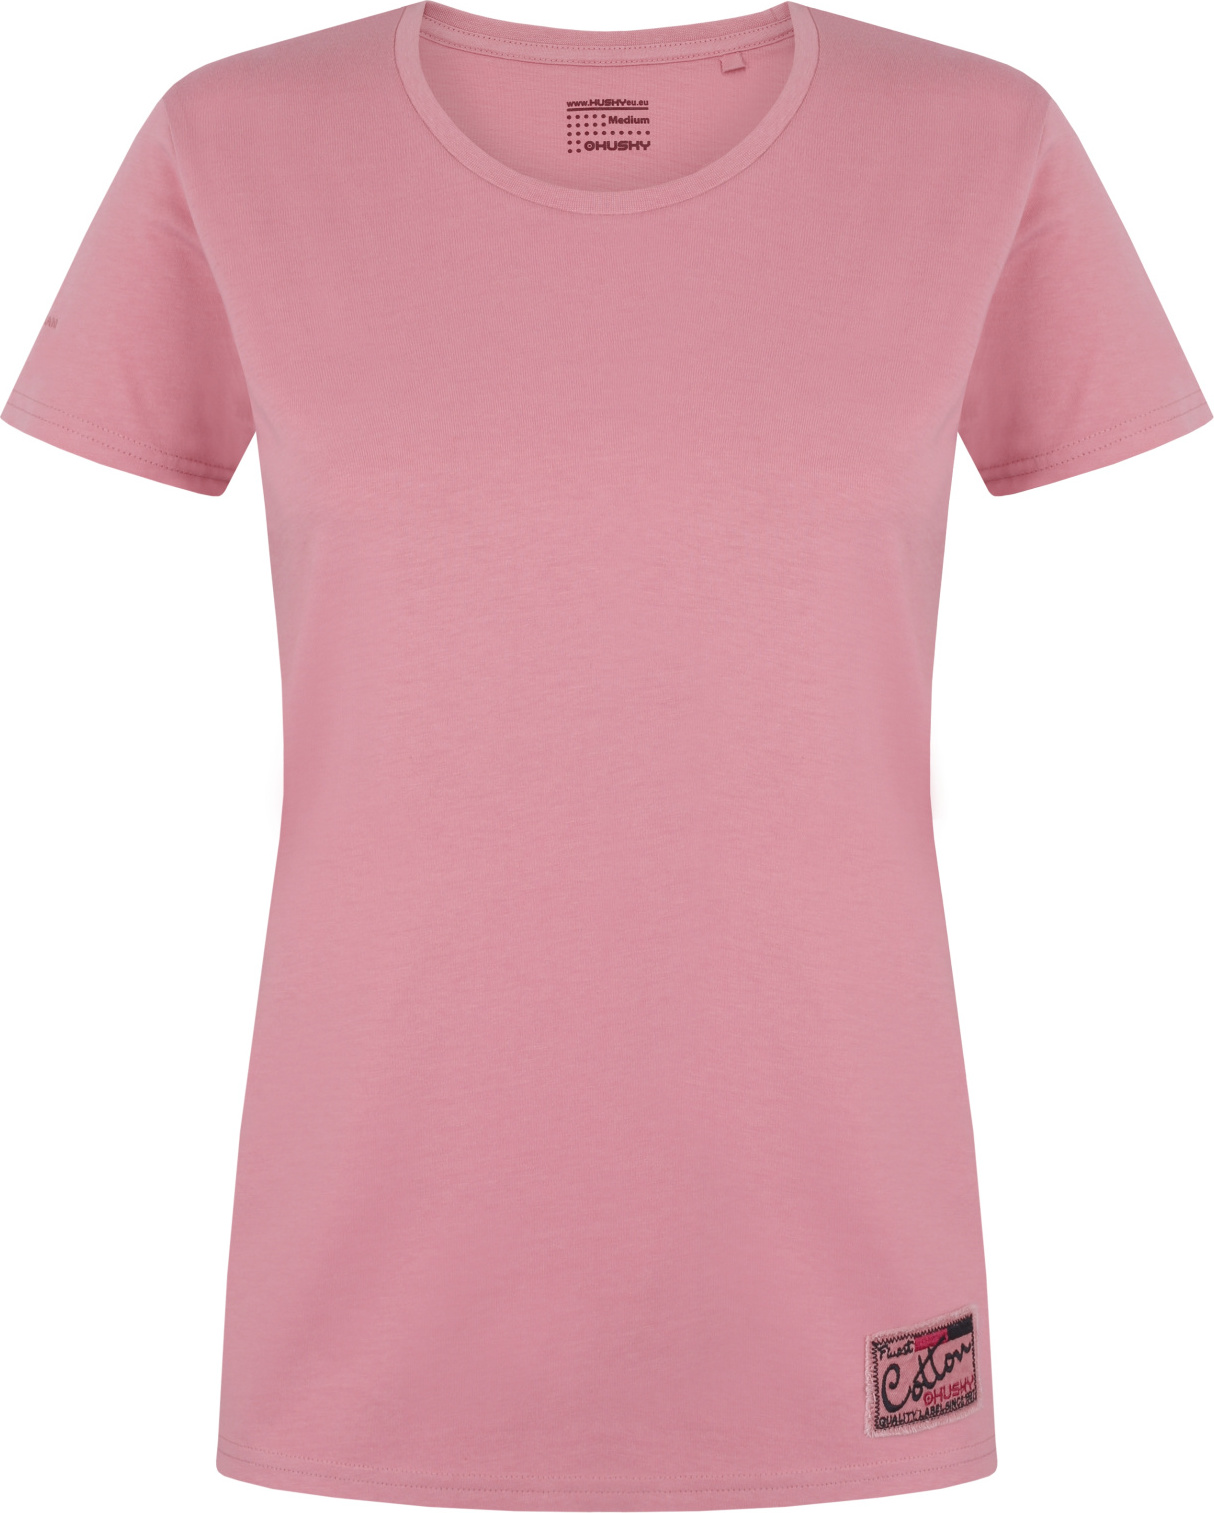 Dámské bavlněné triko HUSKY Tee Base růžové Velikost: XXL